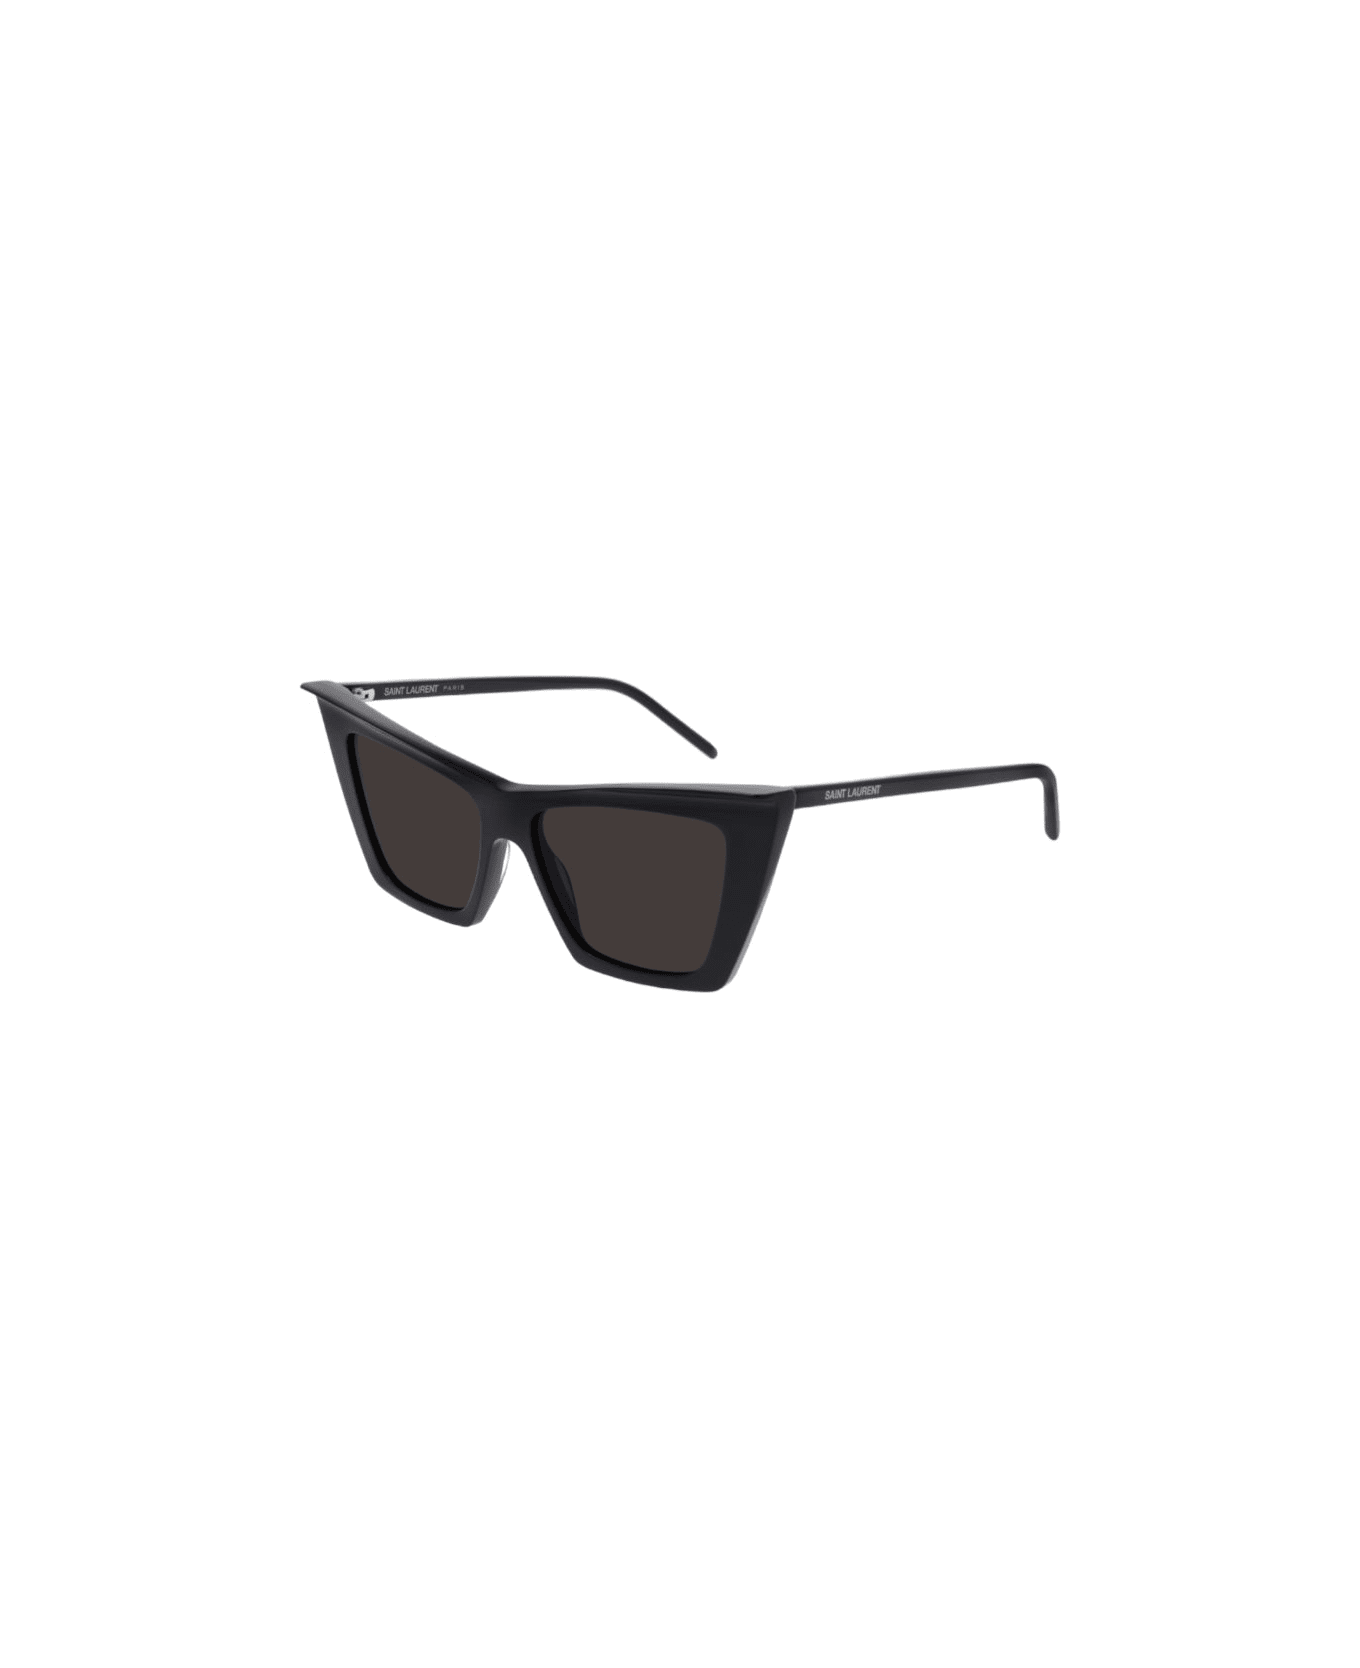 Saint Laurent Eyewear Sl 372 - Black Sunglasses サングラス